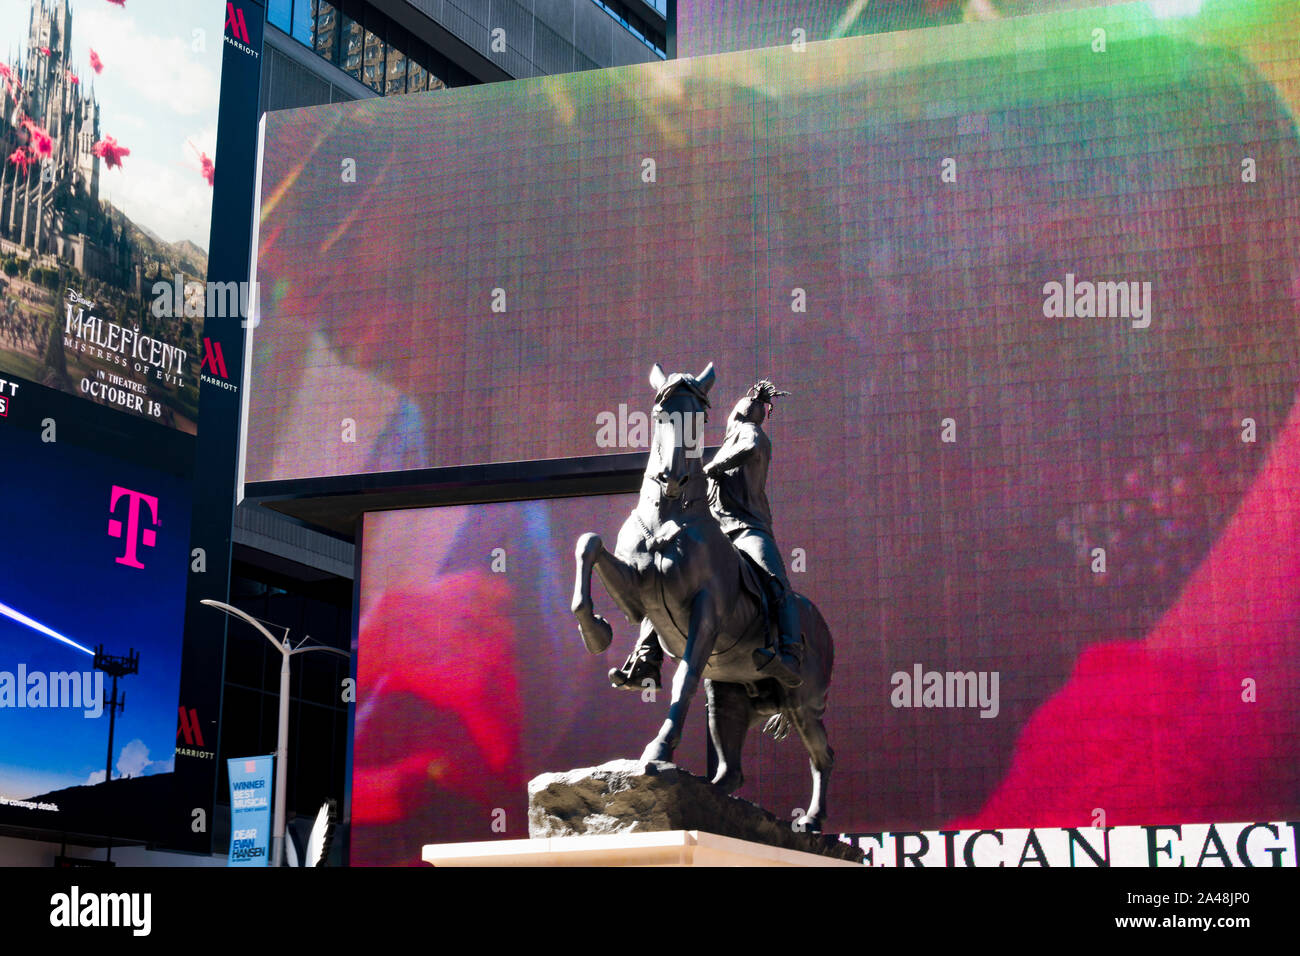 "Les rumeurs de guerre' sculpture par Kehinde Wiley est exposée temporairement dans Times Square, New York City, USA Banque D'Images